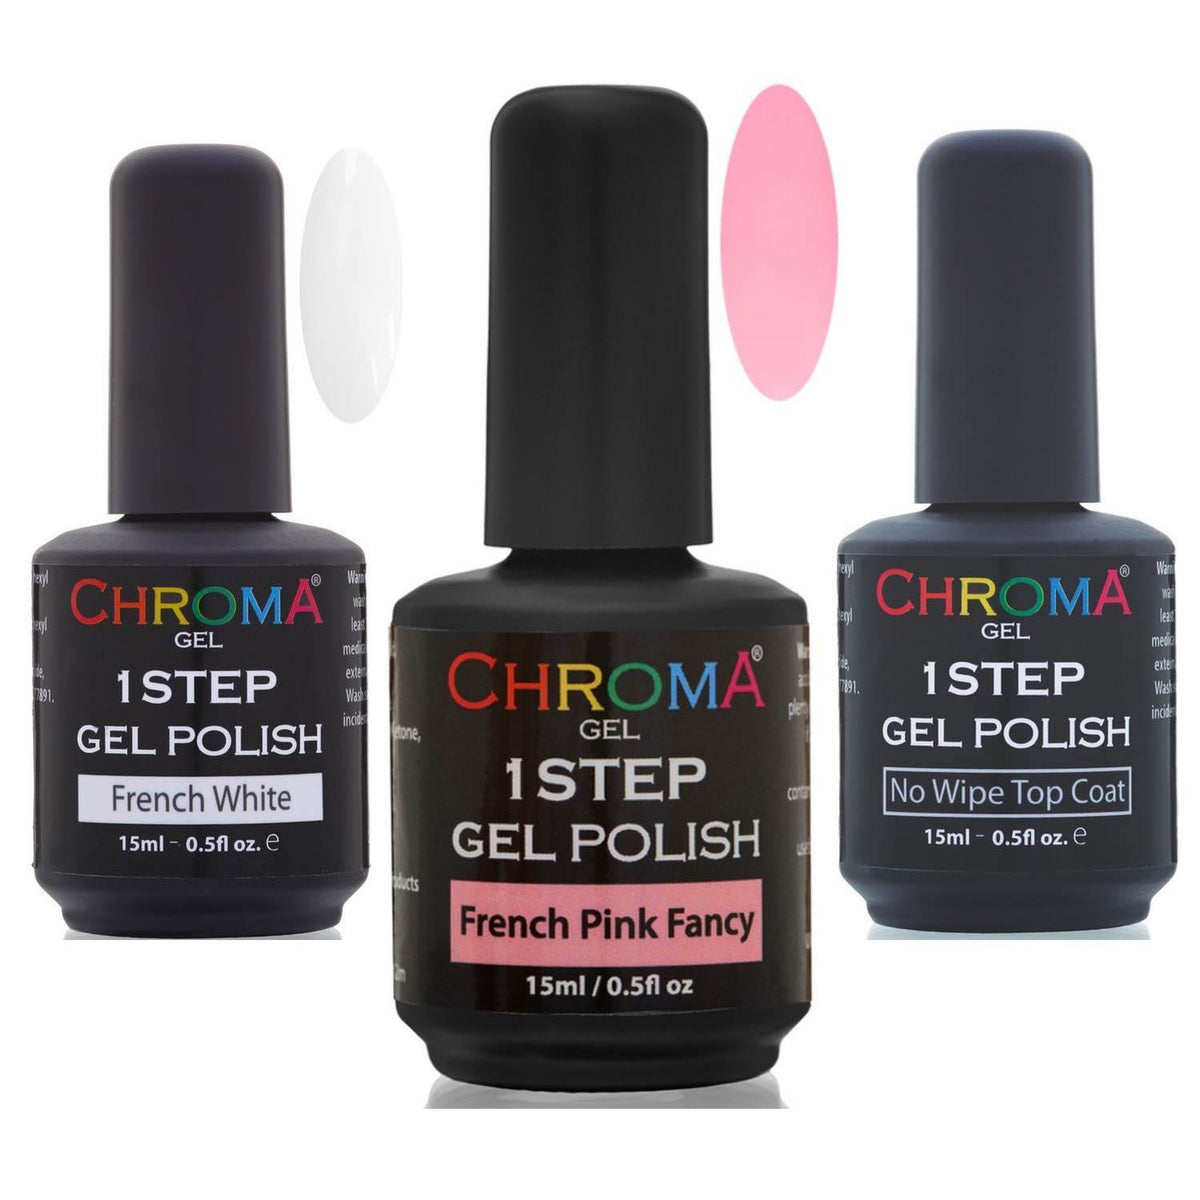 Chroma Gel 1 Step Fancy French Manicure Gel Polish SET - Chroma Gel